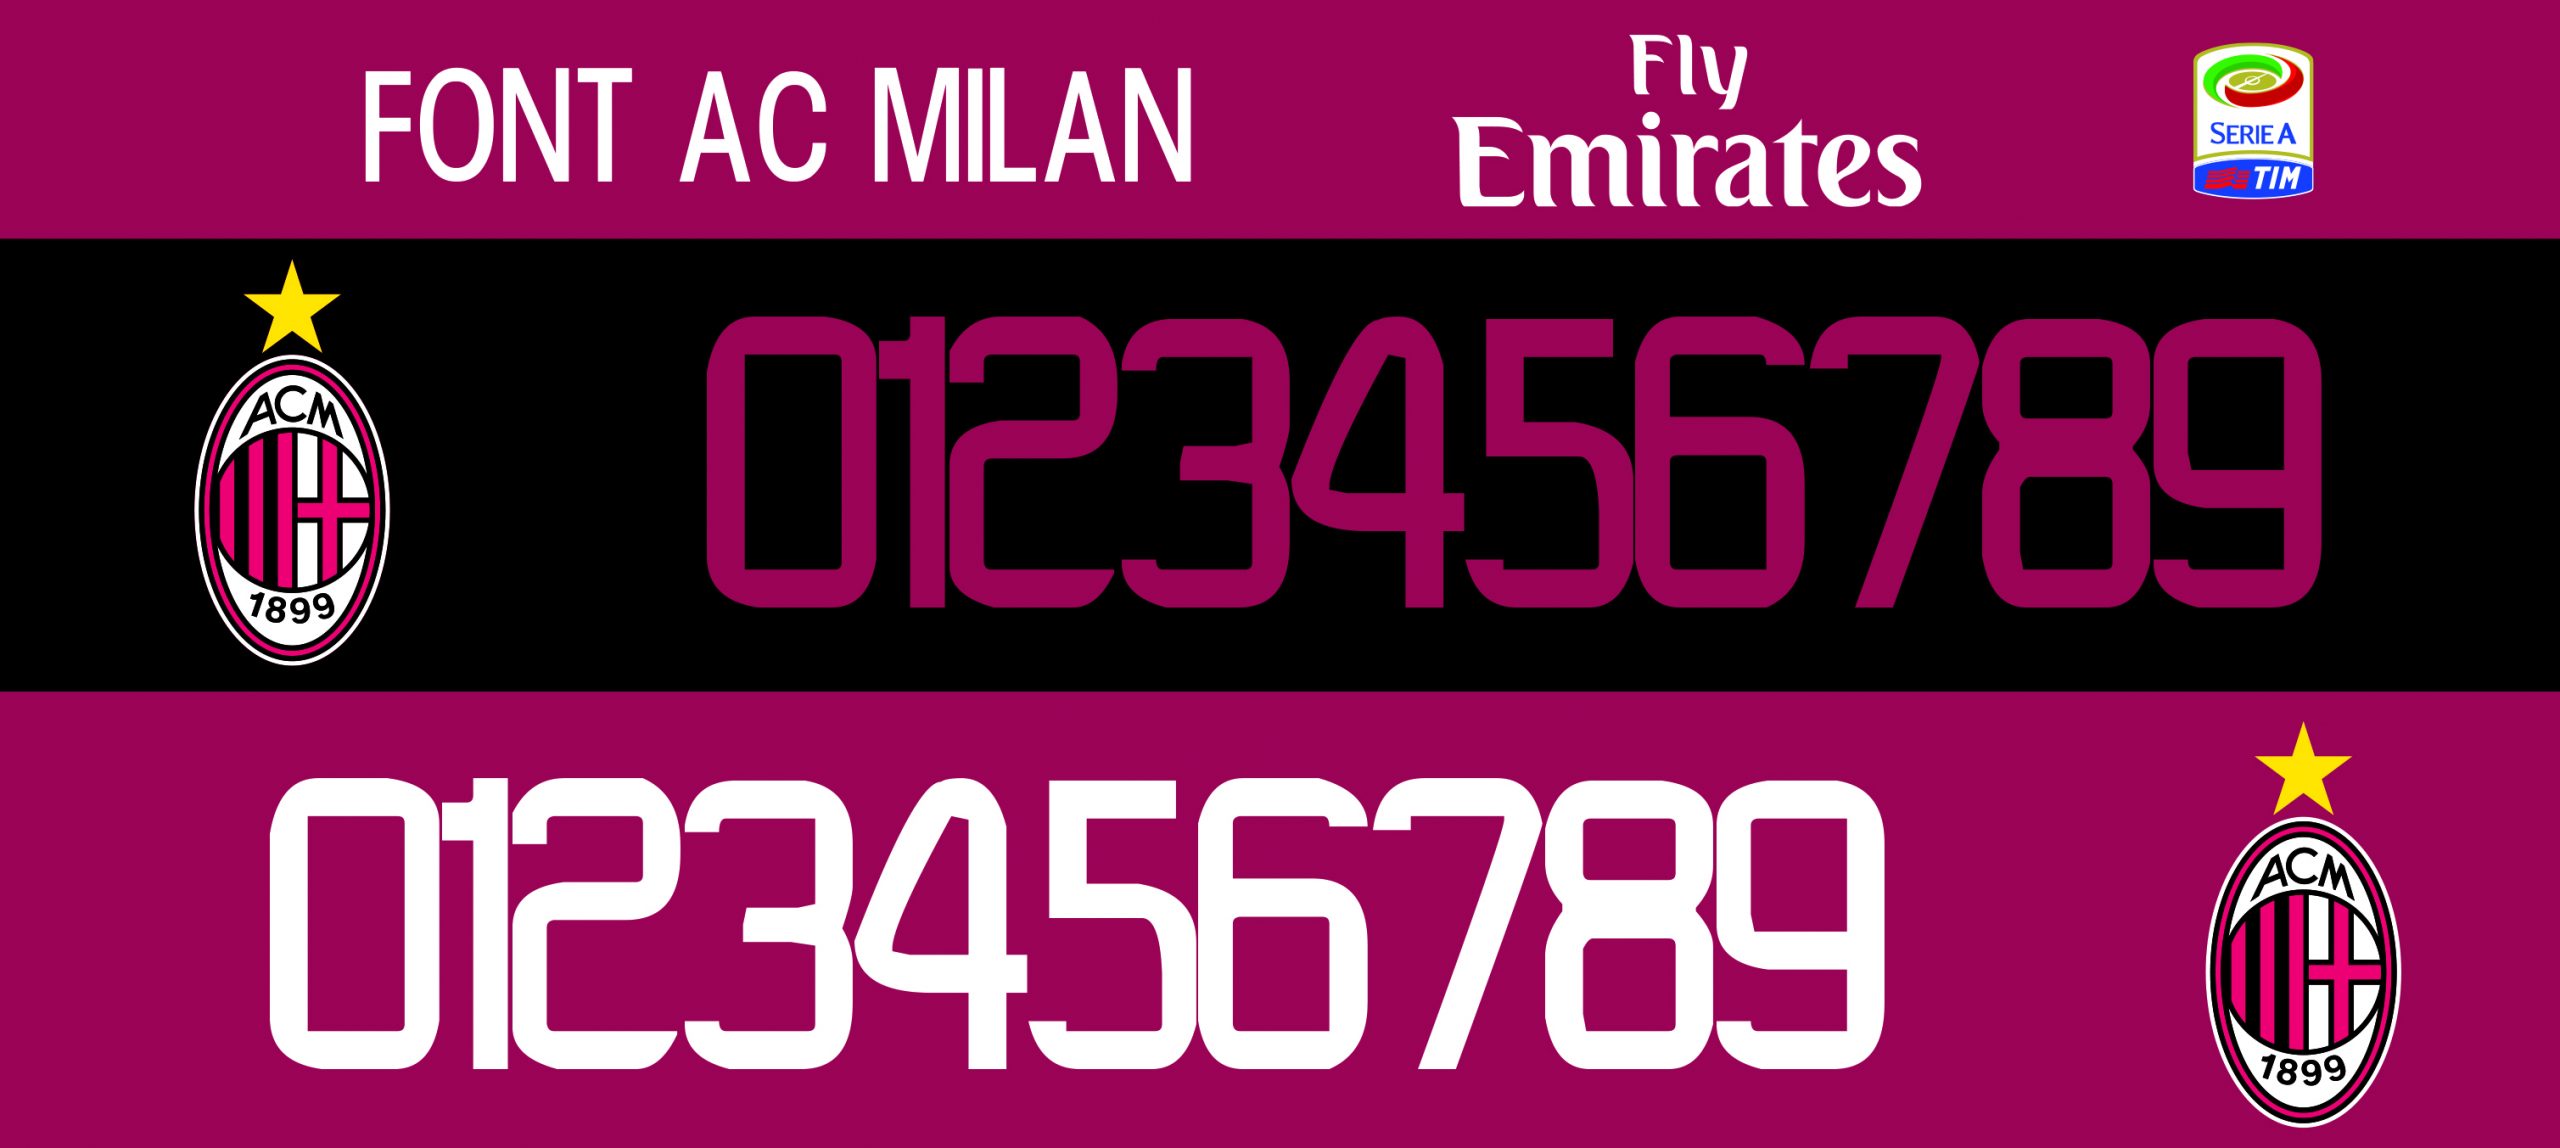 Font AC Milan